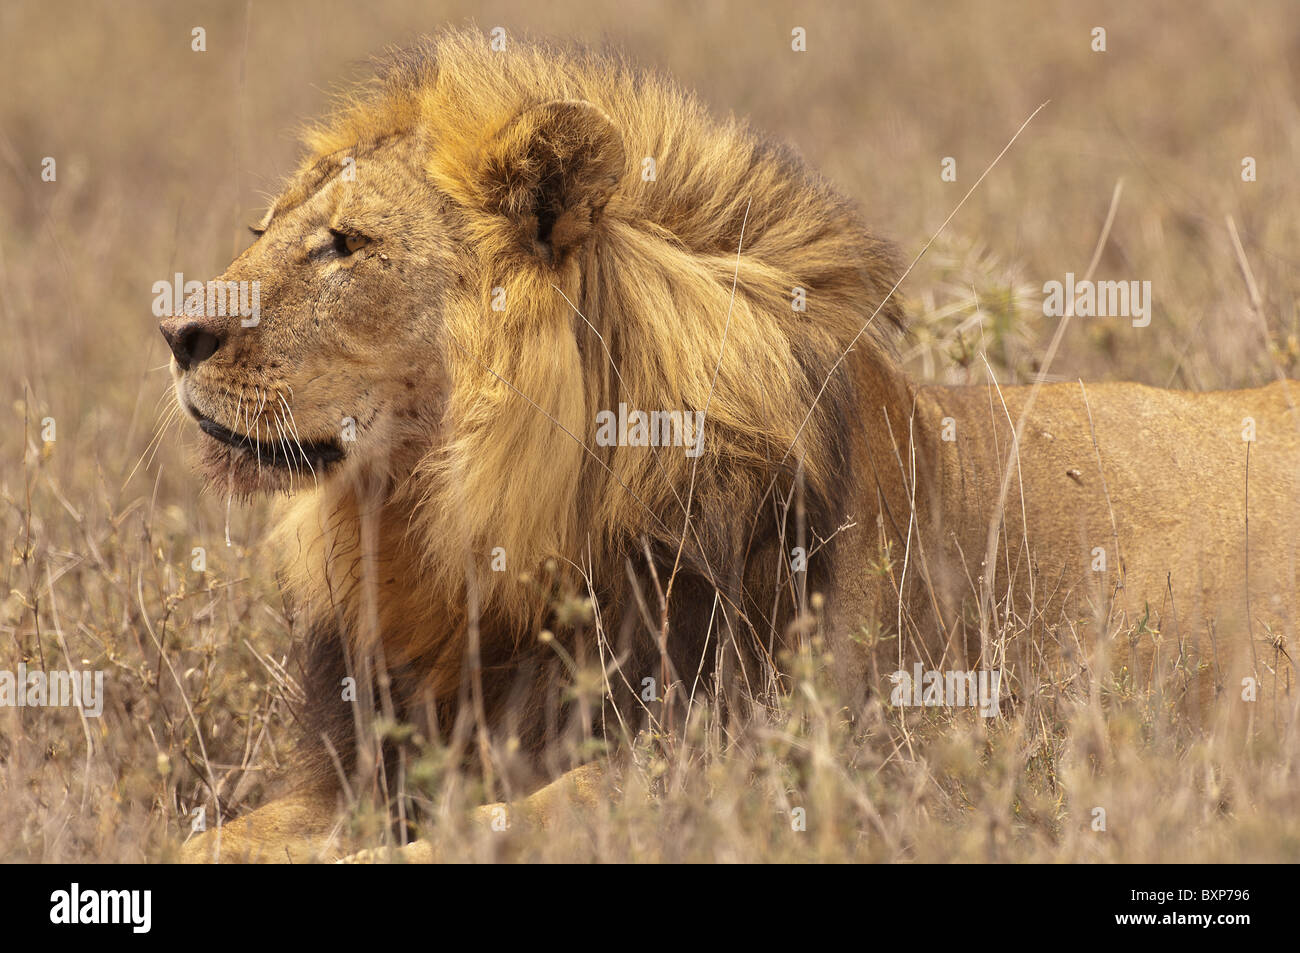 Stock Foto-Profil eines männlichen Löwen im Gras Stockfoto